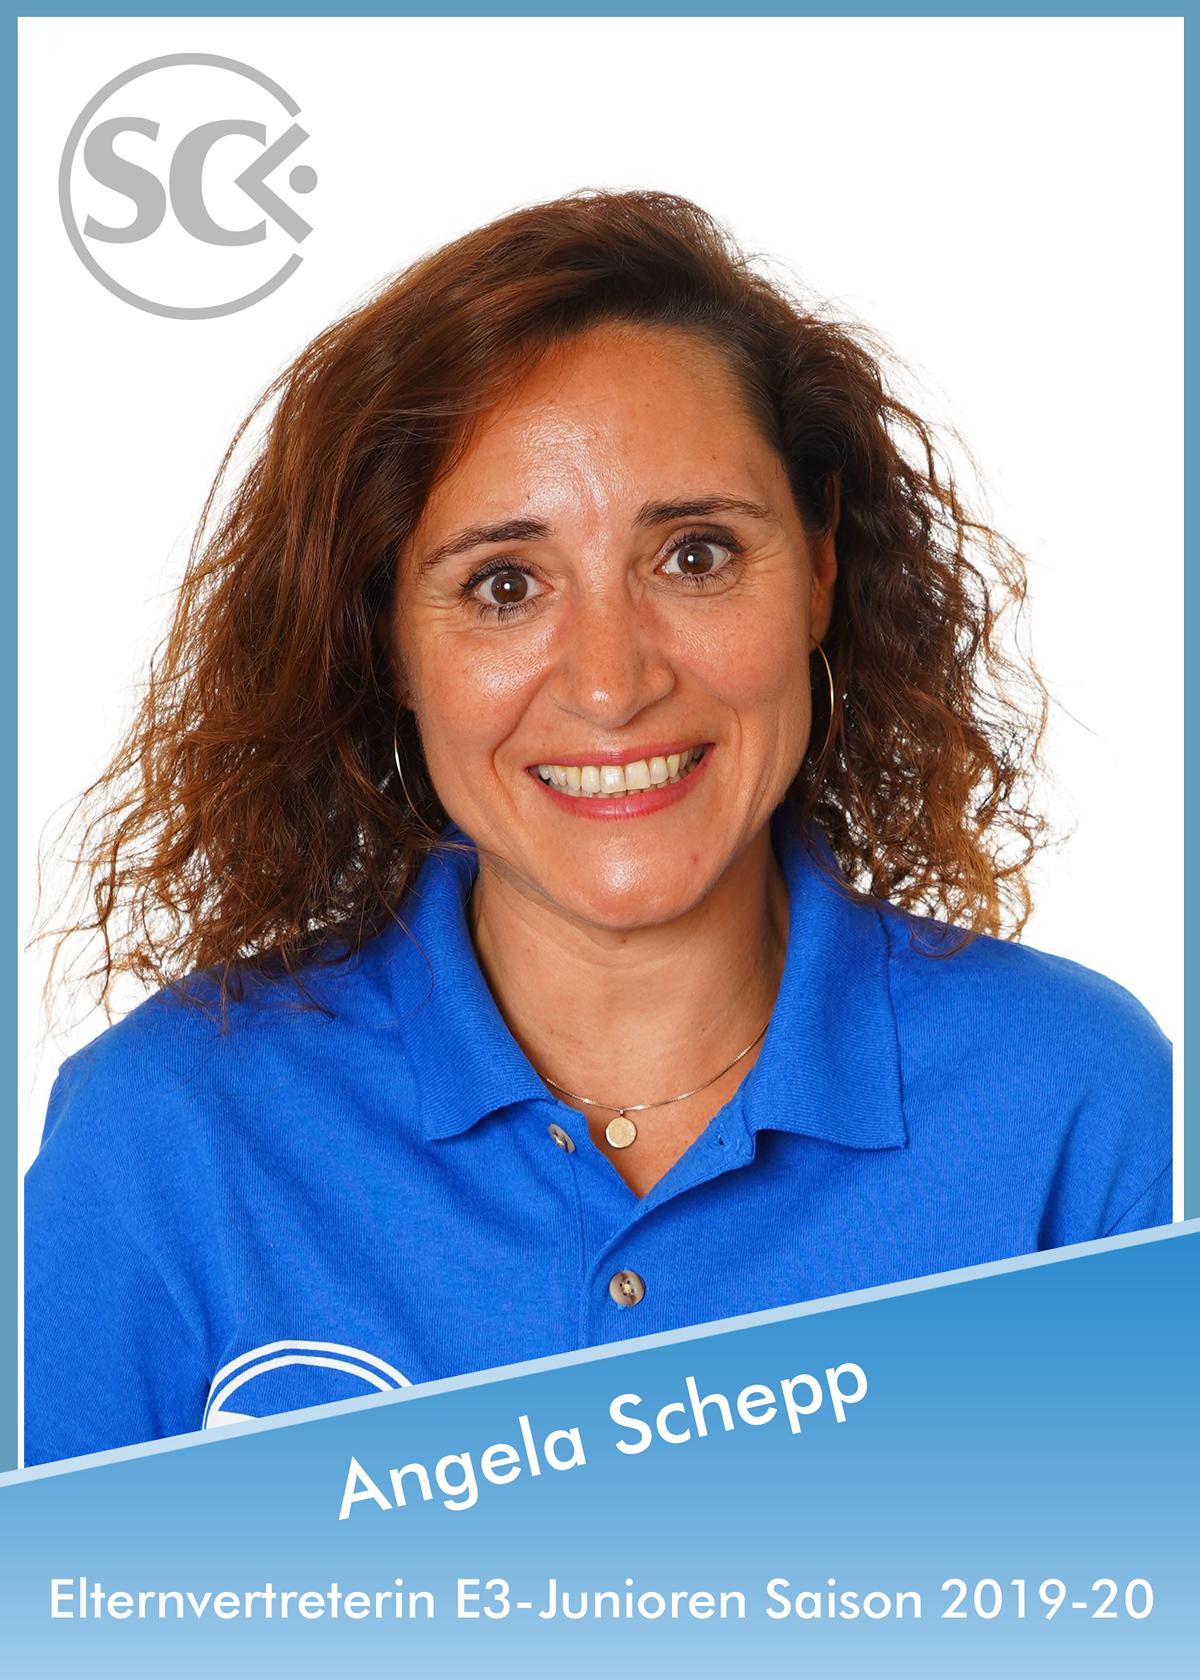 Angela Schepp